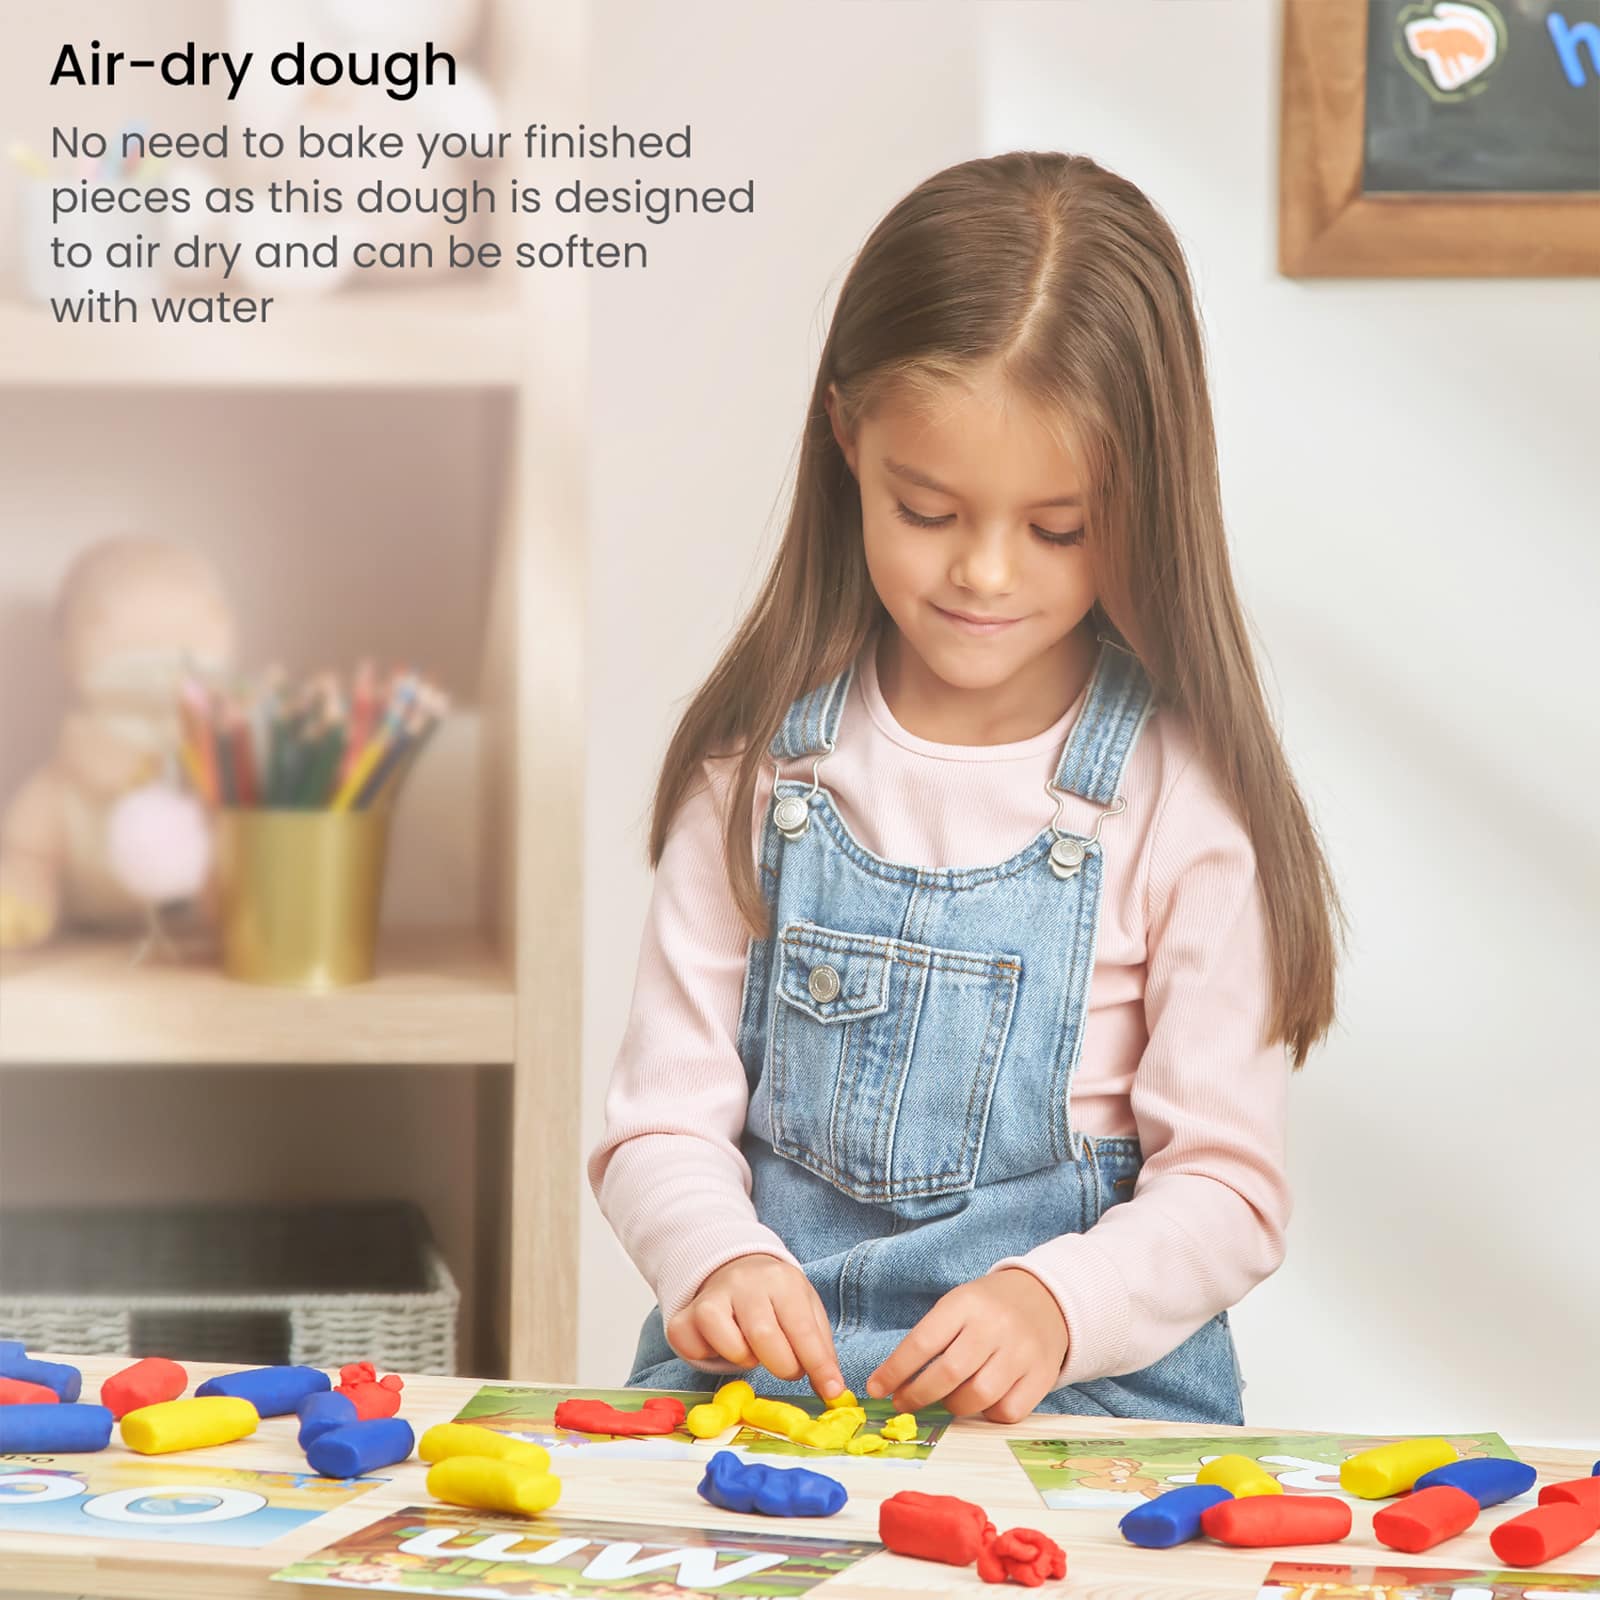 Arteza&#xAE; Kids Alphabet Learn By Dough Kit, 43 pcs